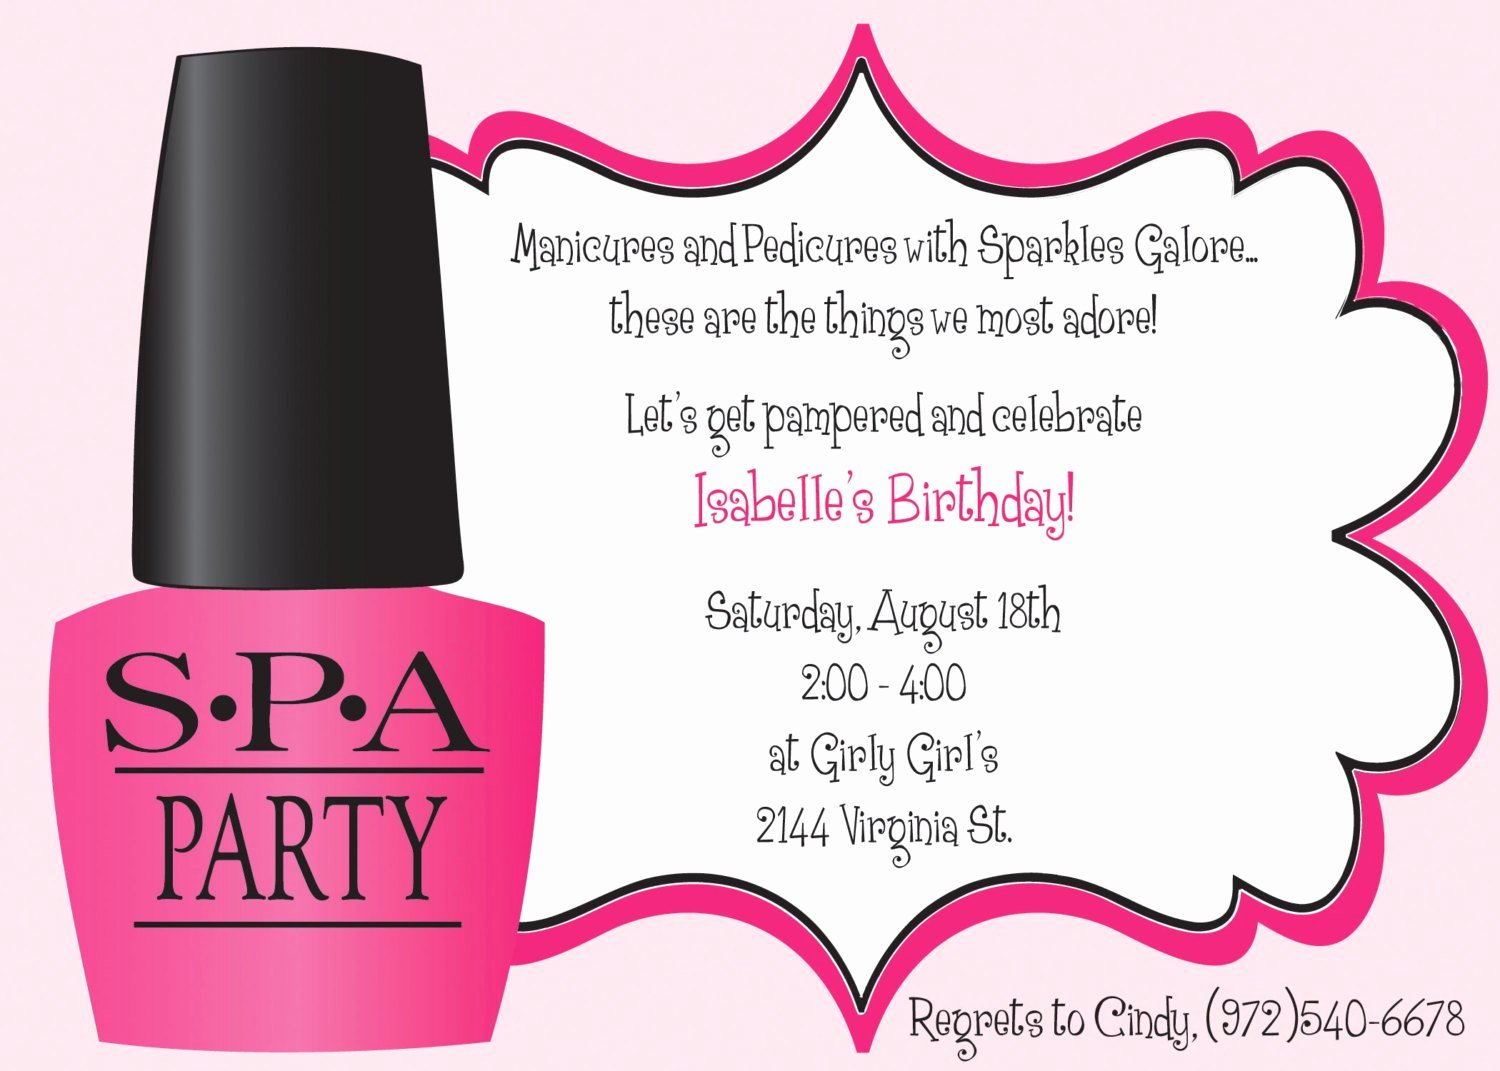 Spa Party Invitation Template Beautiful Ooh La La Spa Party Girls Birthday Invitation Includes